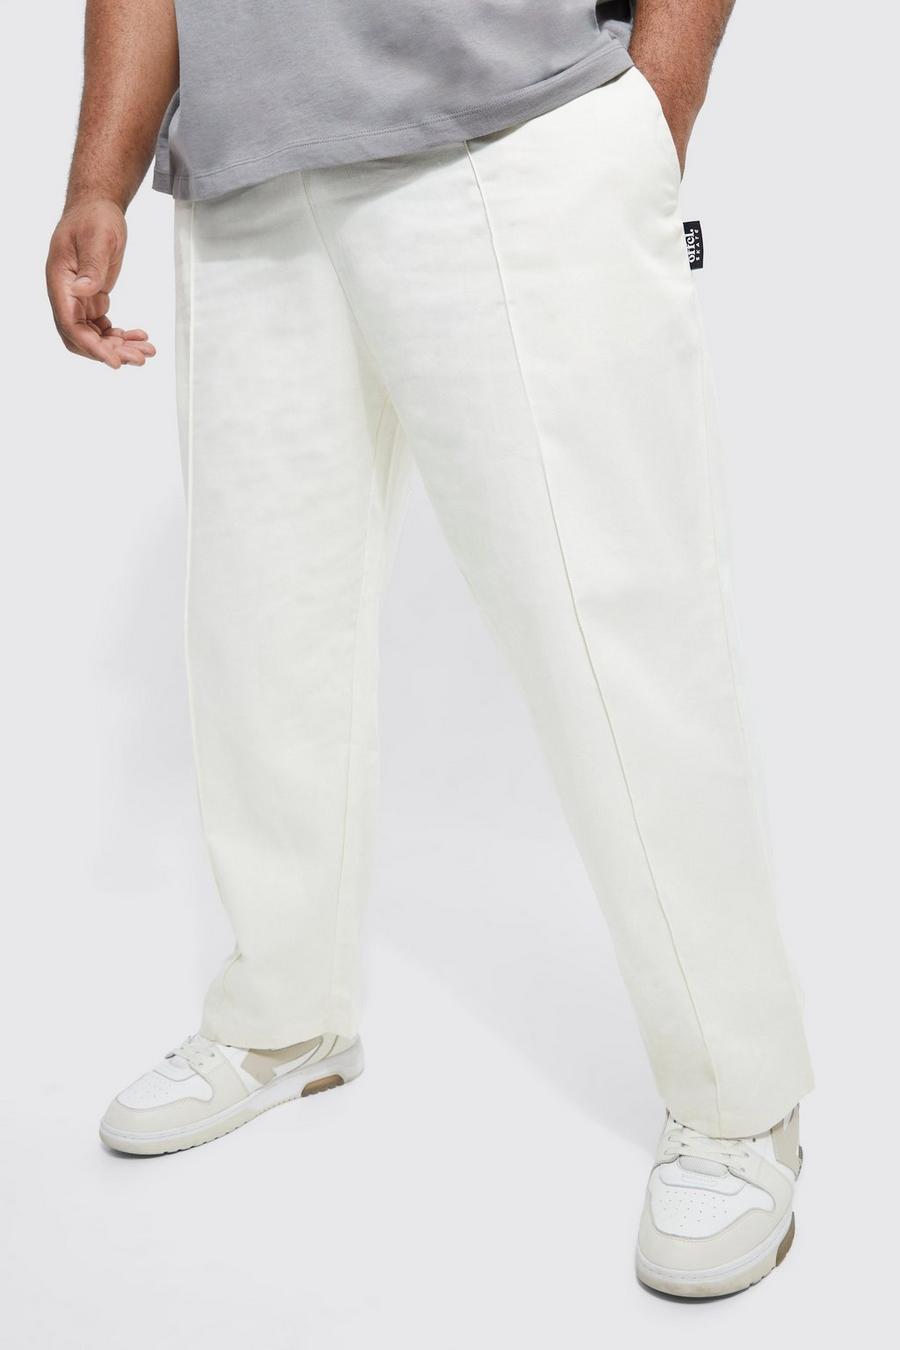 Pantalón Plus chino pesquero estilo skate con cintura elástica, Ecru blanco